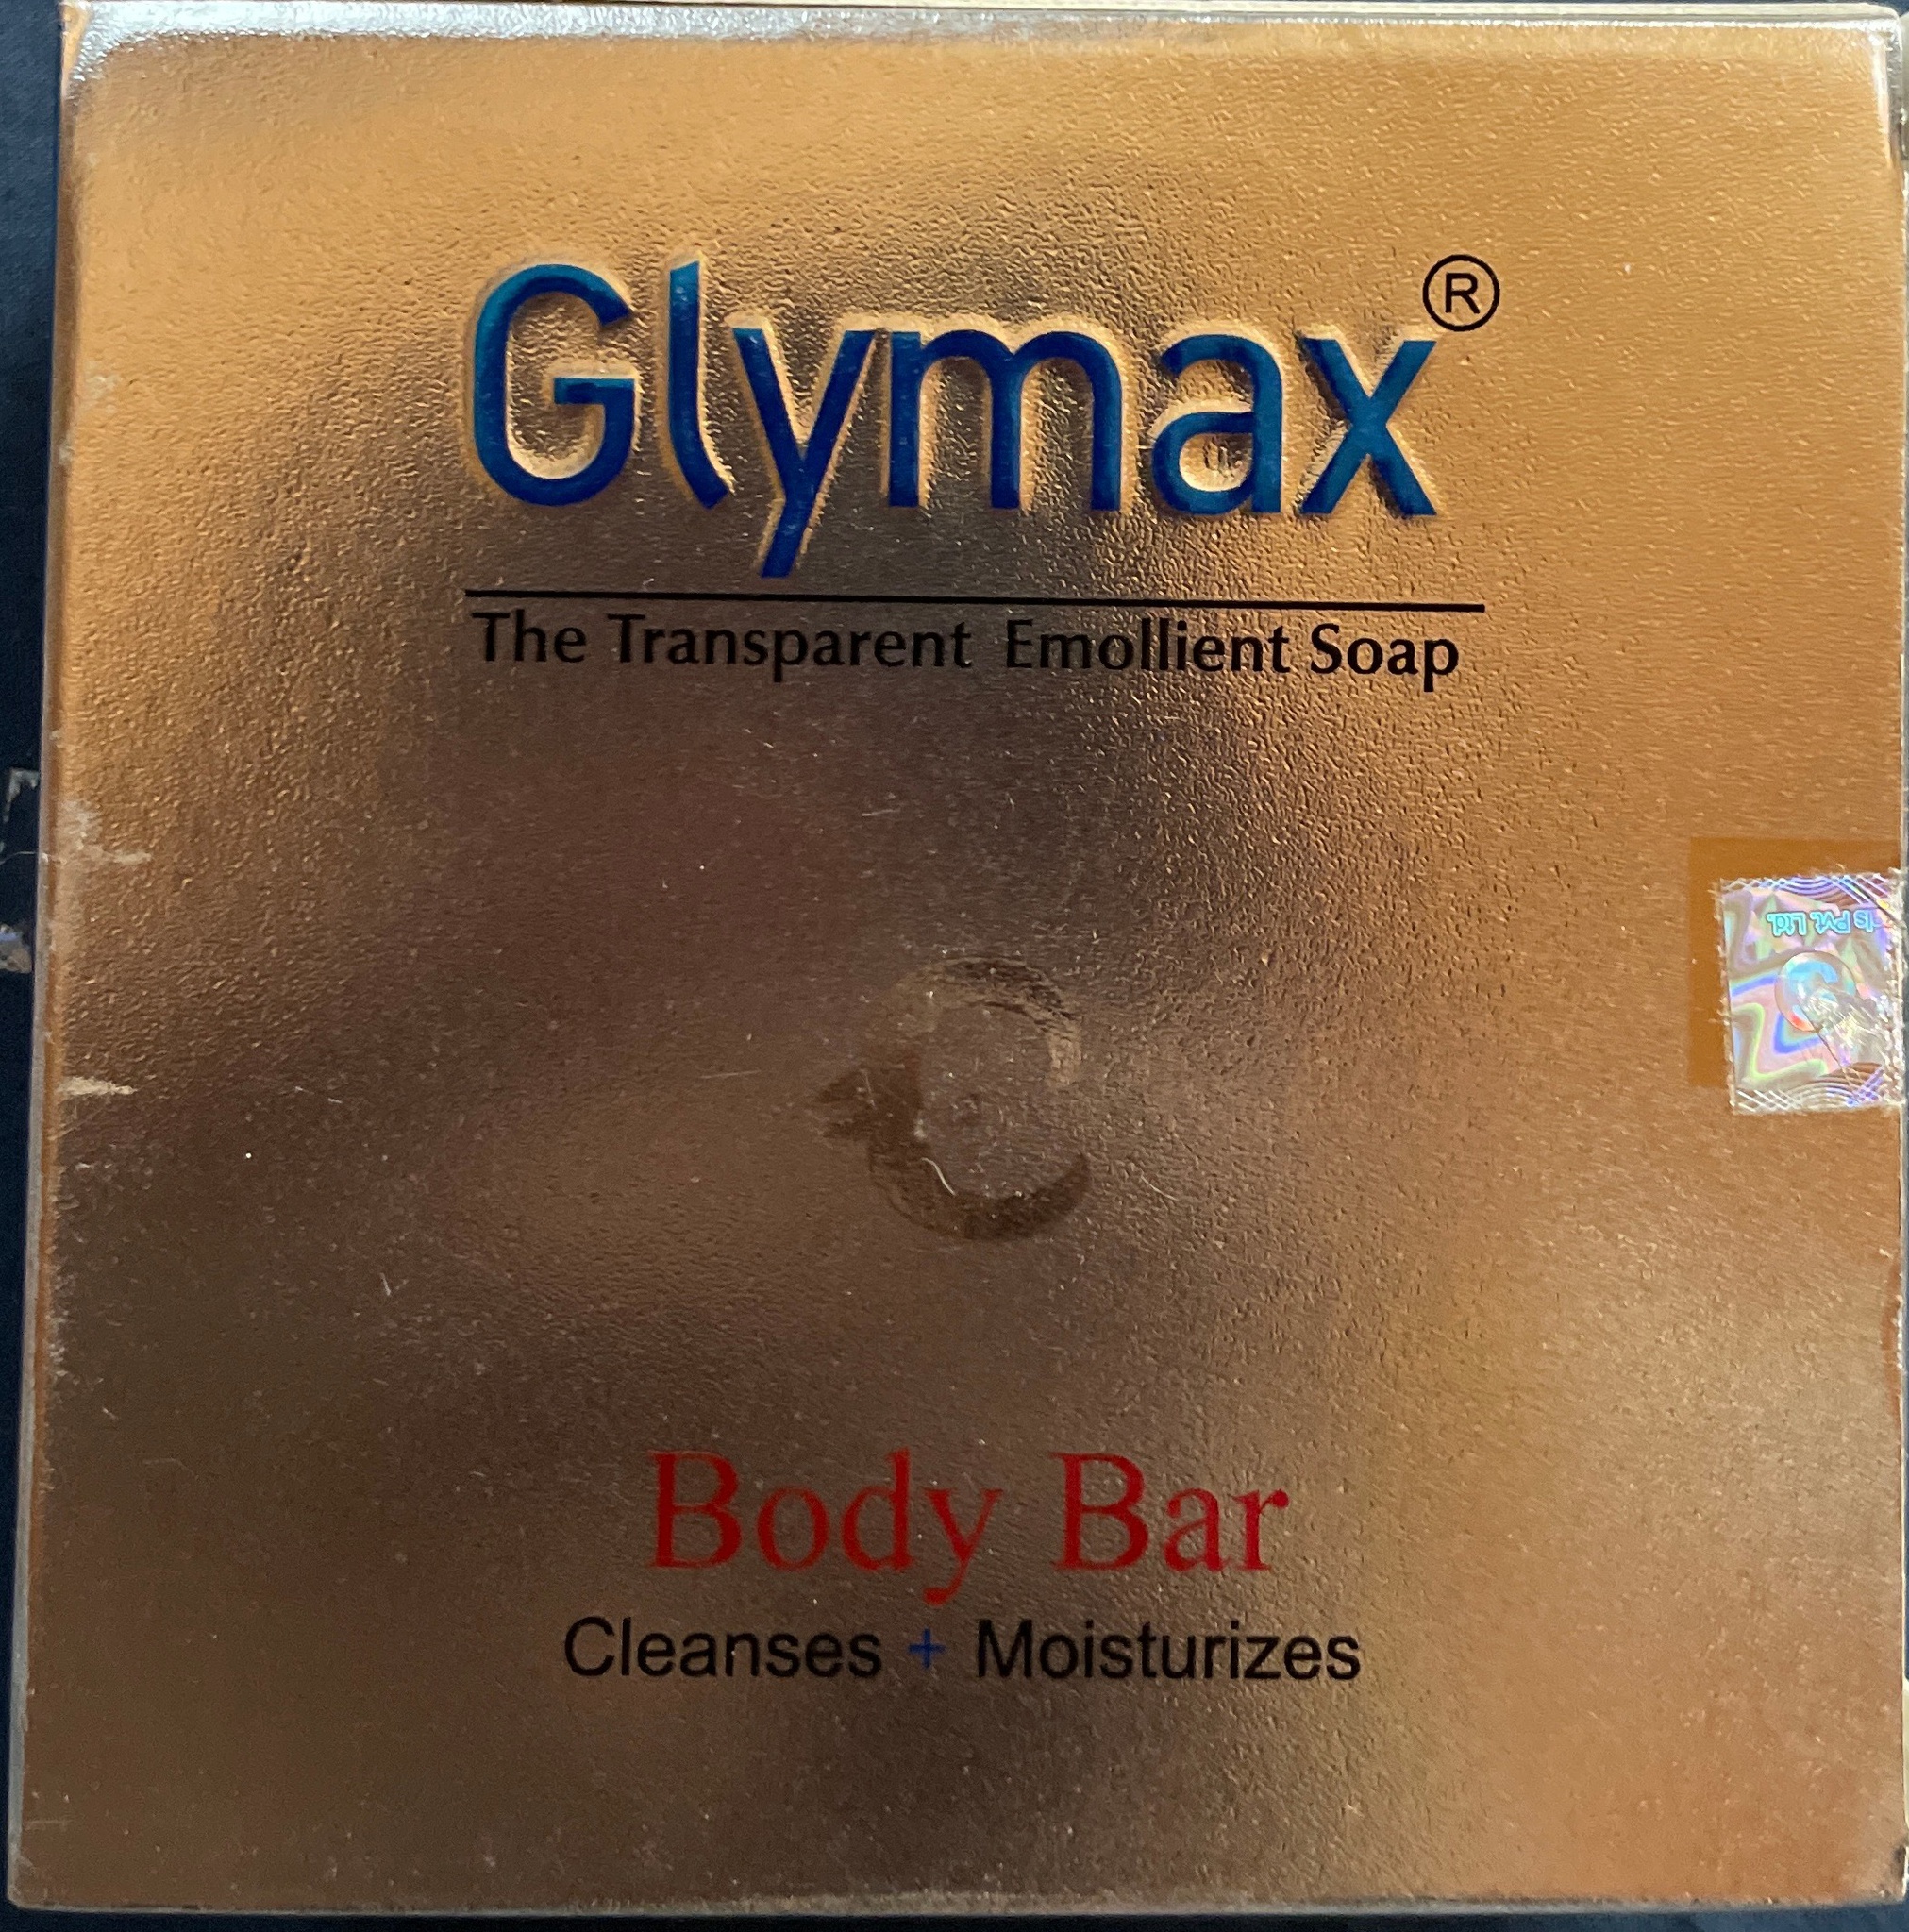 Glymax The Transparent Emollient Soap